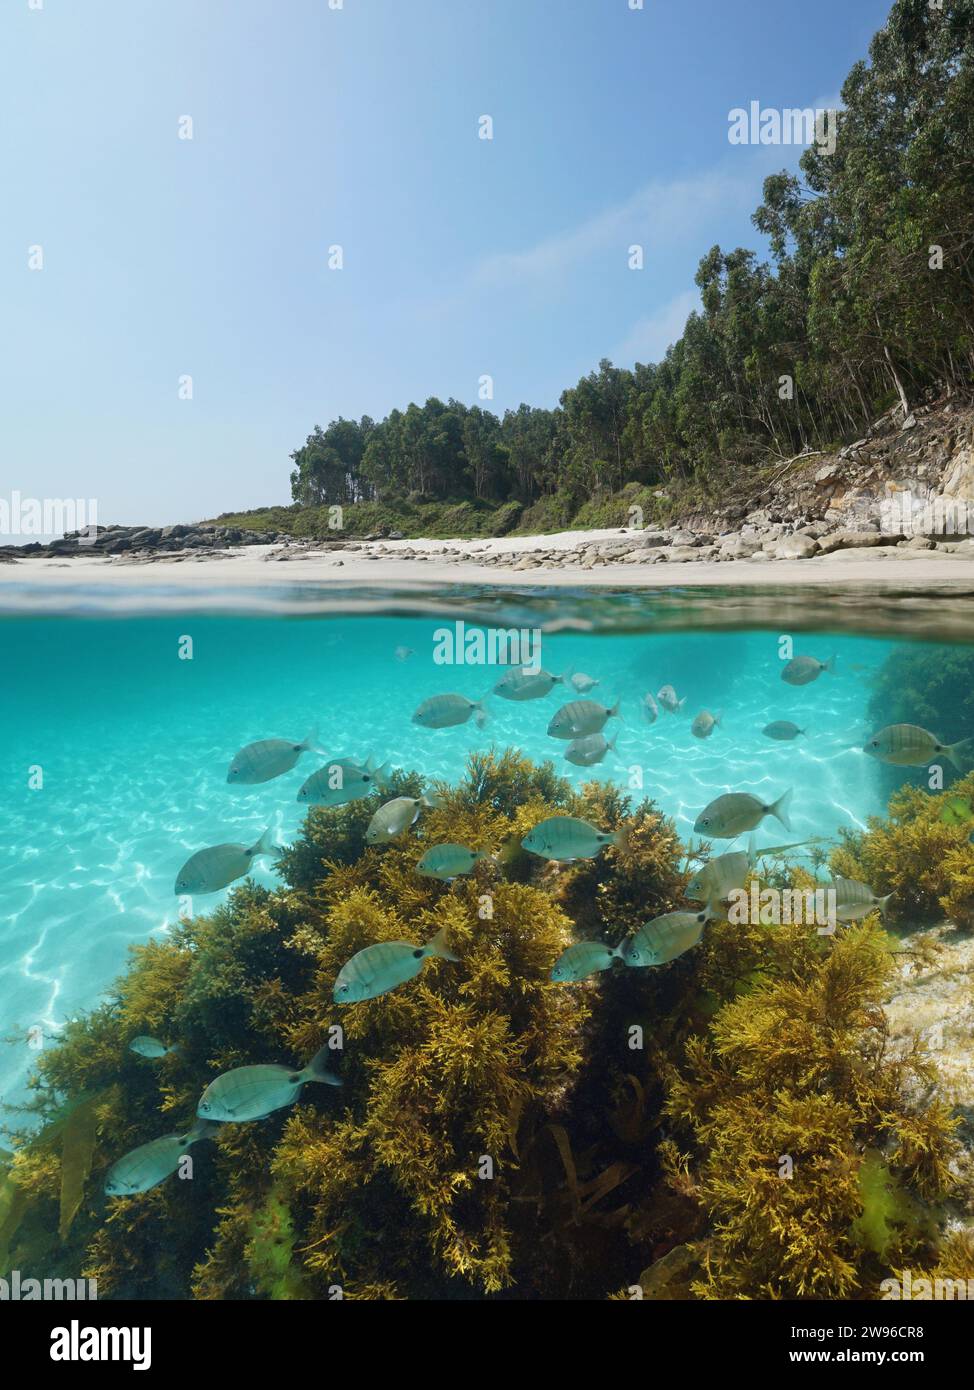 Plage d'Espagne sur la côte atlantique avec des poissons et des algues sous l'eau dans l'océan, vue sur deux niveaux au-dessus et sous la surface de l'eau, scène naturelle, Galice Banque D'Images